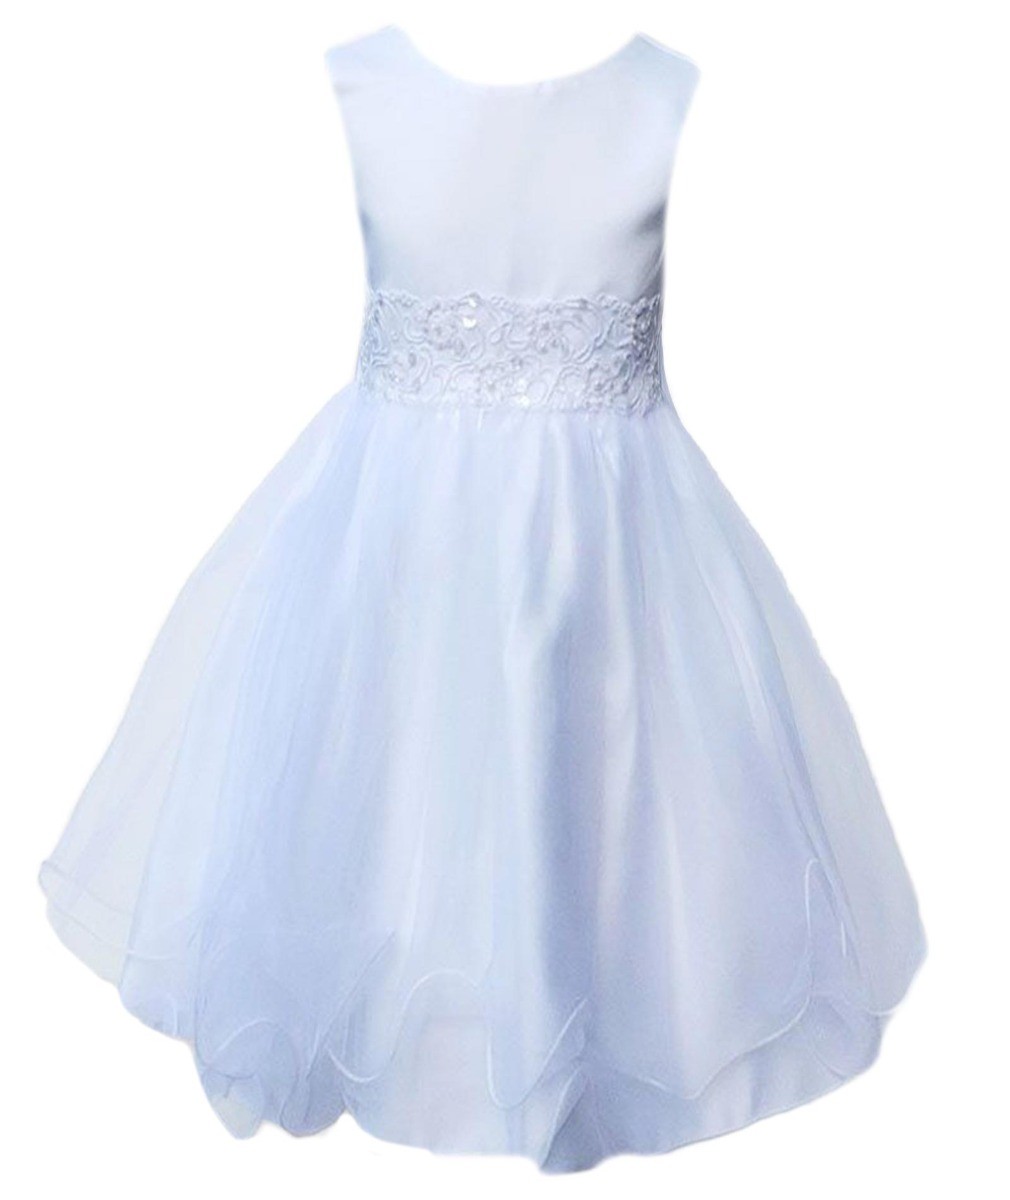 Baby Girls Flower Sleeveless Christening Dress - White